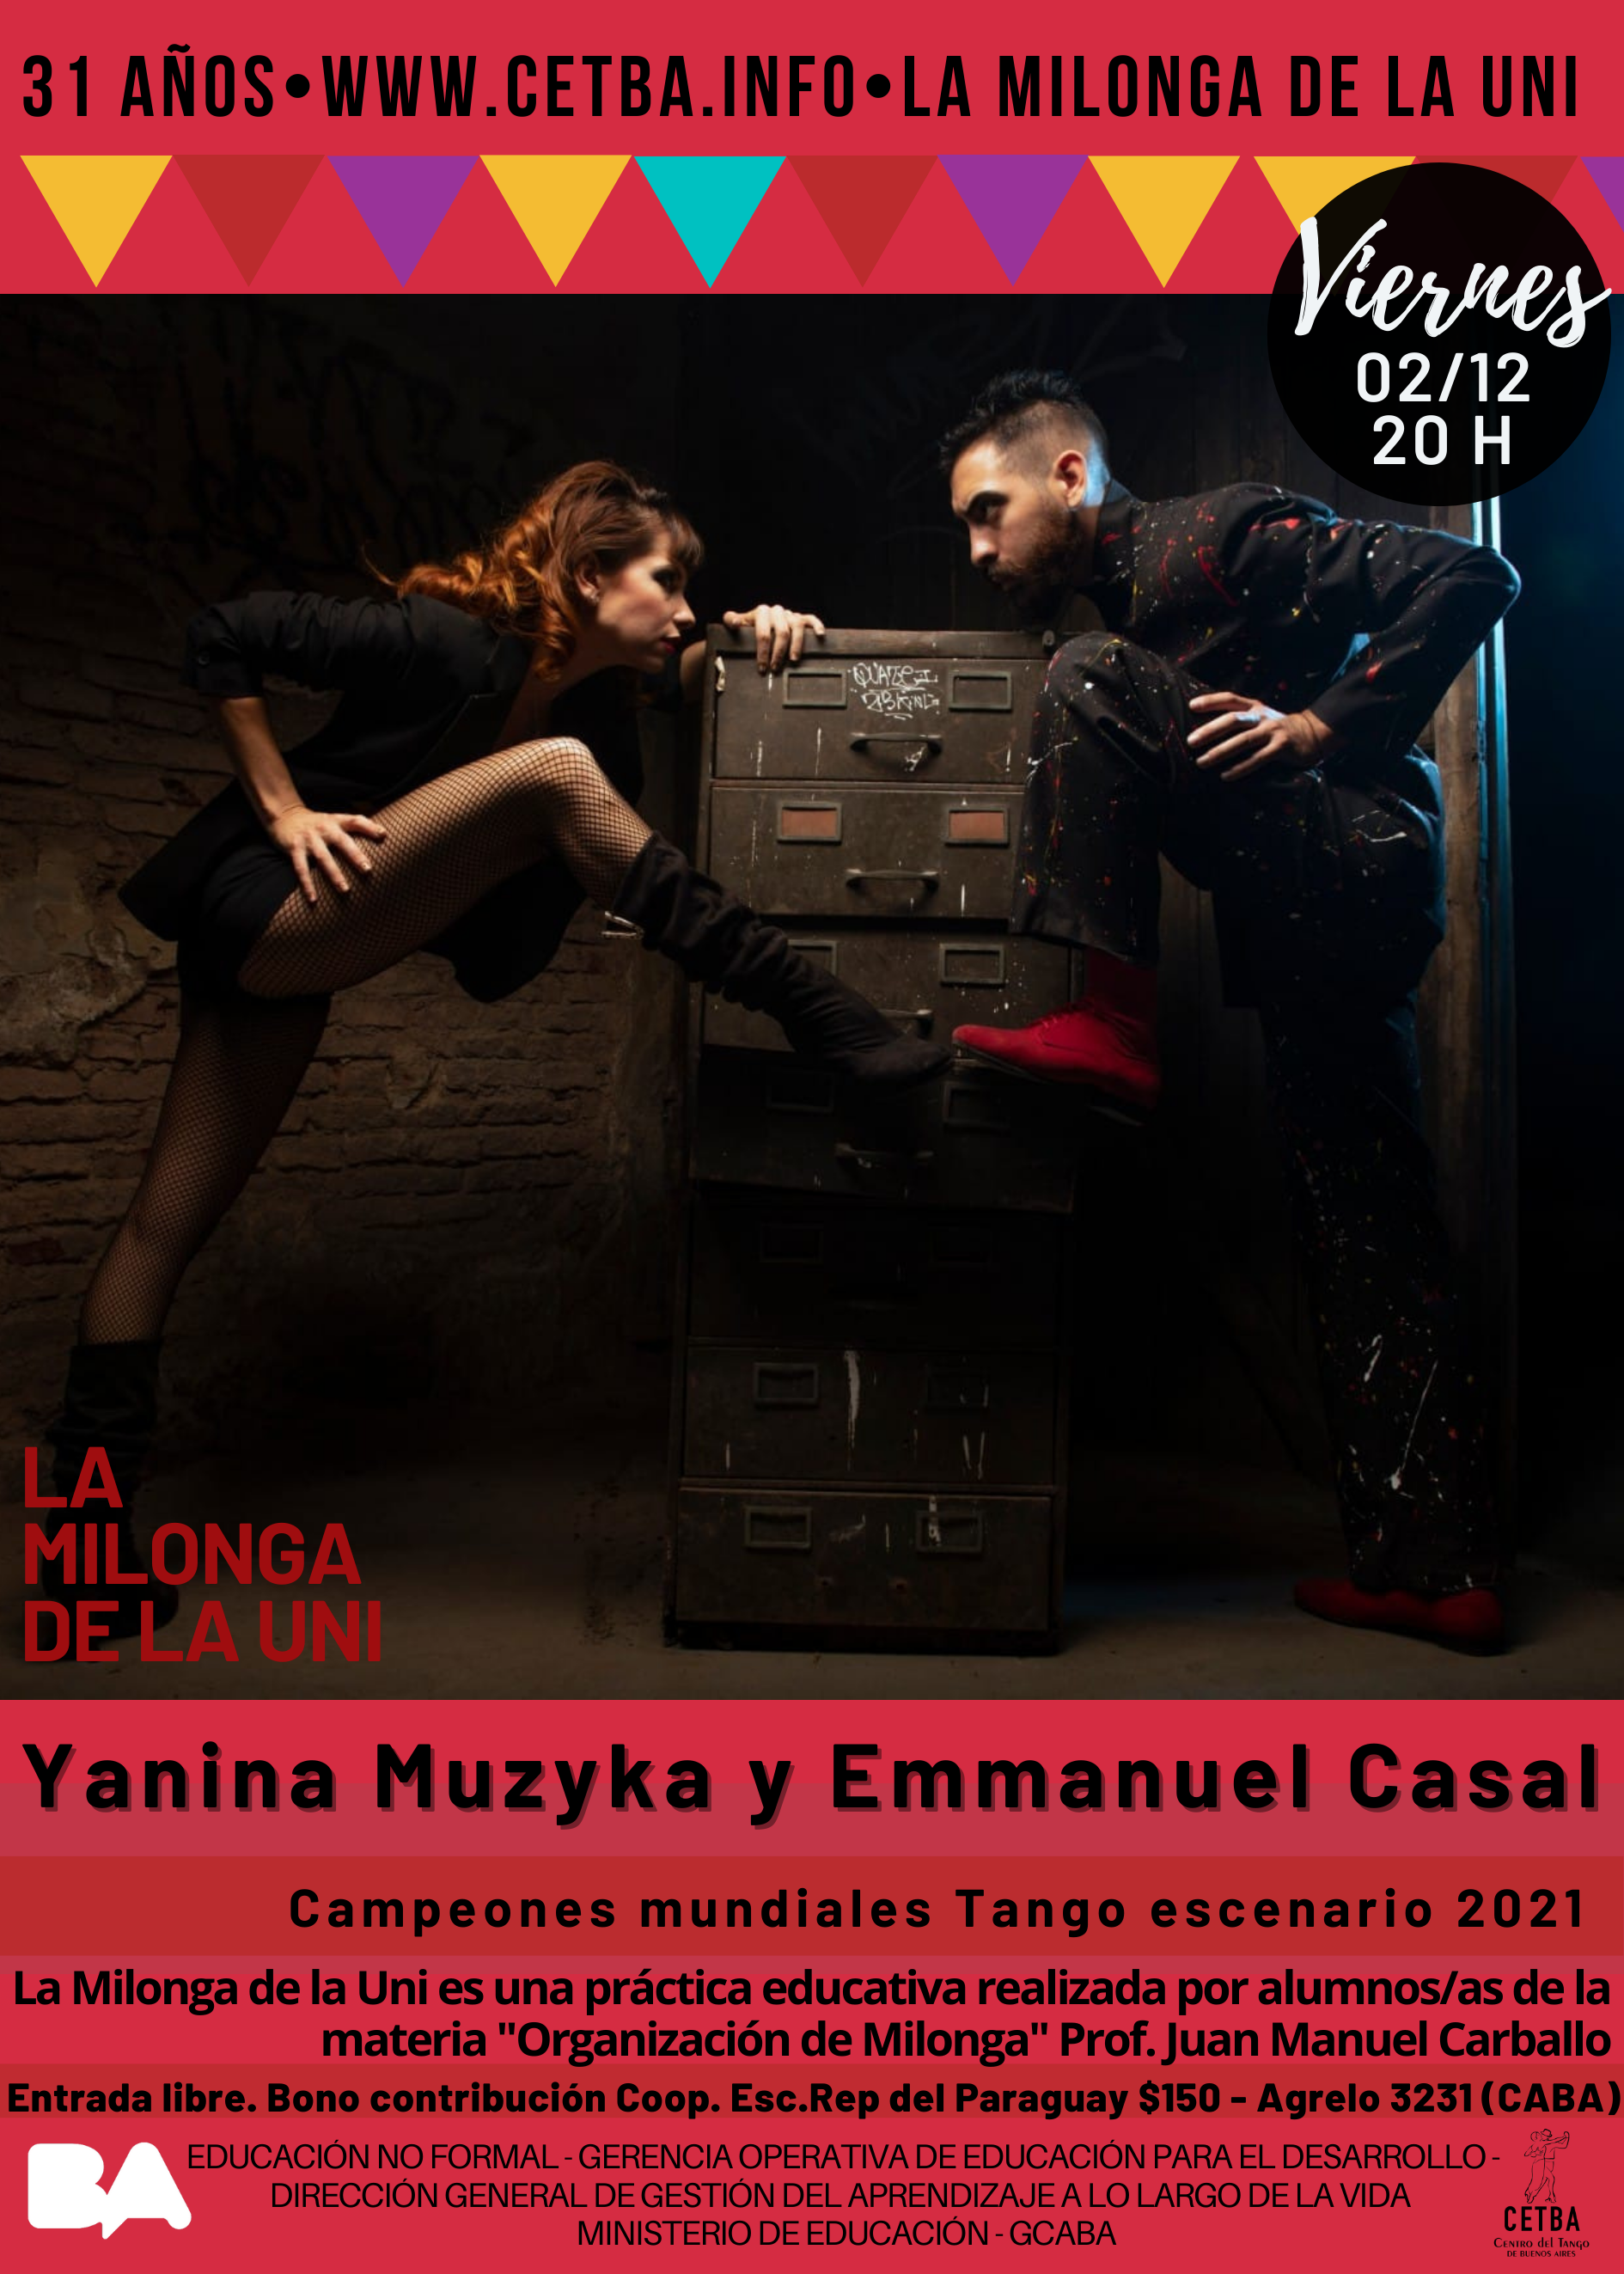 La Milonga de la Uni! (Viernes 02/12) Bailan Yanina Muzika y Emmanuel Casal